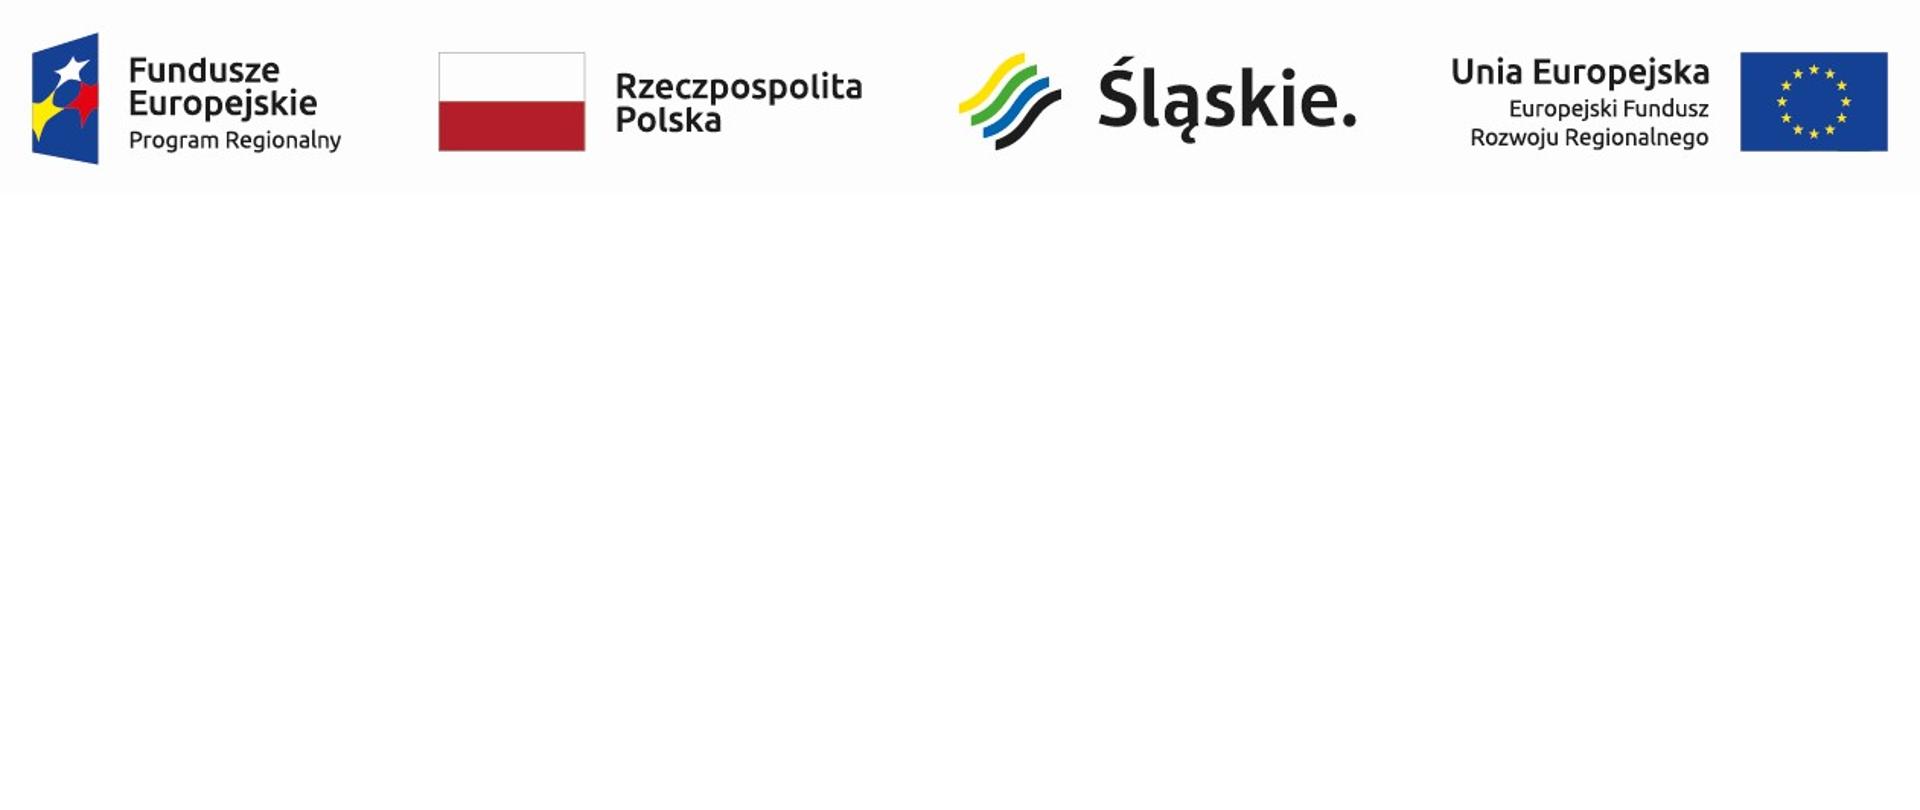 Logotypy: Fundusze Europejskie Program Regionalny, Rzeczpospolita Polska, Śląskie, Unia Europejska Europejski Fundusz Rozwoju Regionalnego